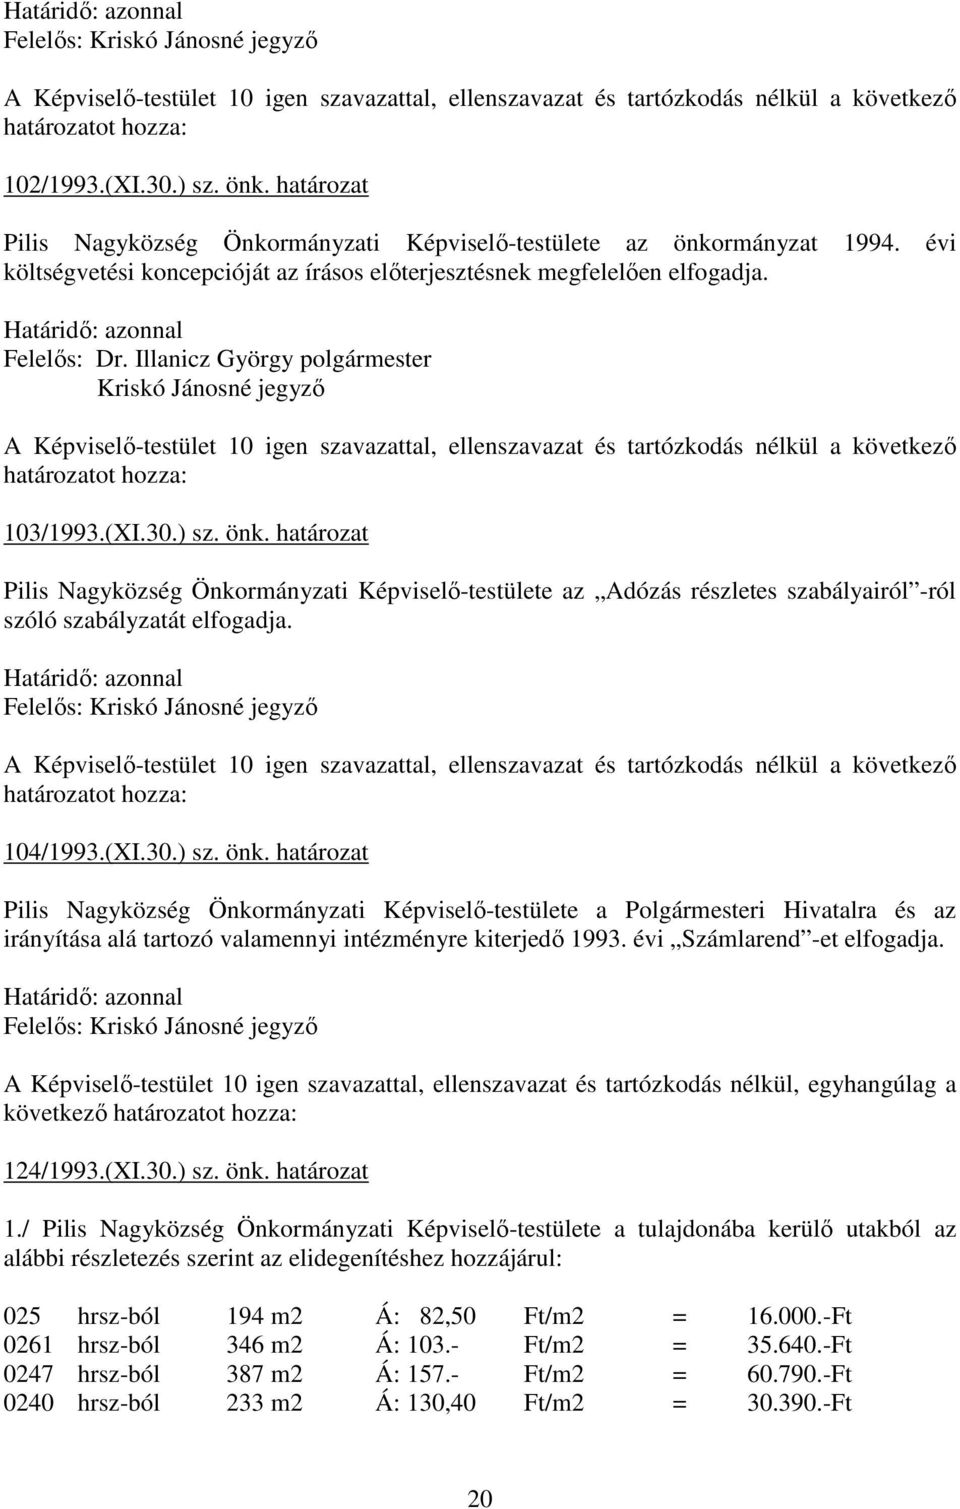 Kriskó Jánosné jegyzı A Képviselı-testület 10 igen szavazattal, ellenszavazat és tartózkodás nélkül a következı határozatot hozza: 103/1993.(XI.30.) sz. önk.